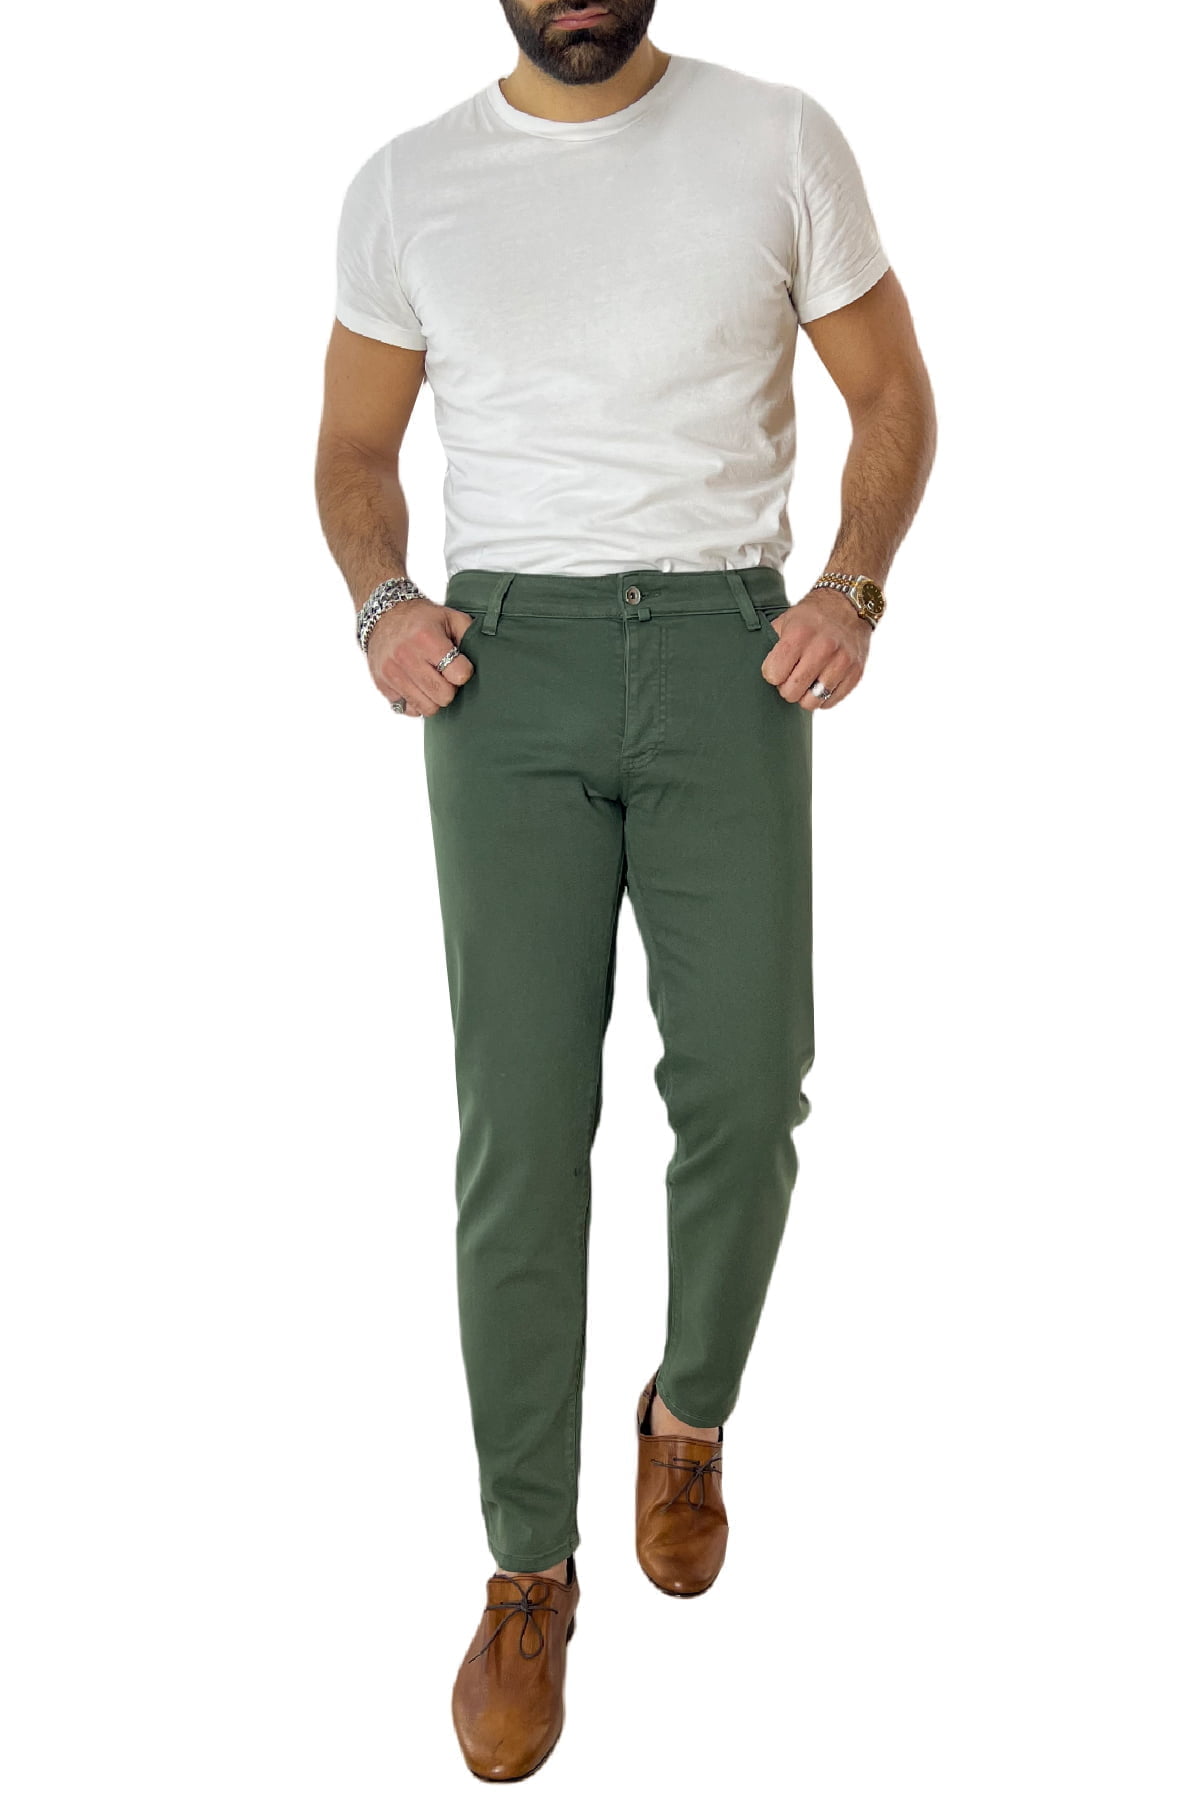 Jeans uomo verde militare tinta unita modello 5 tasche slim fit estivo made in italy